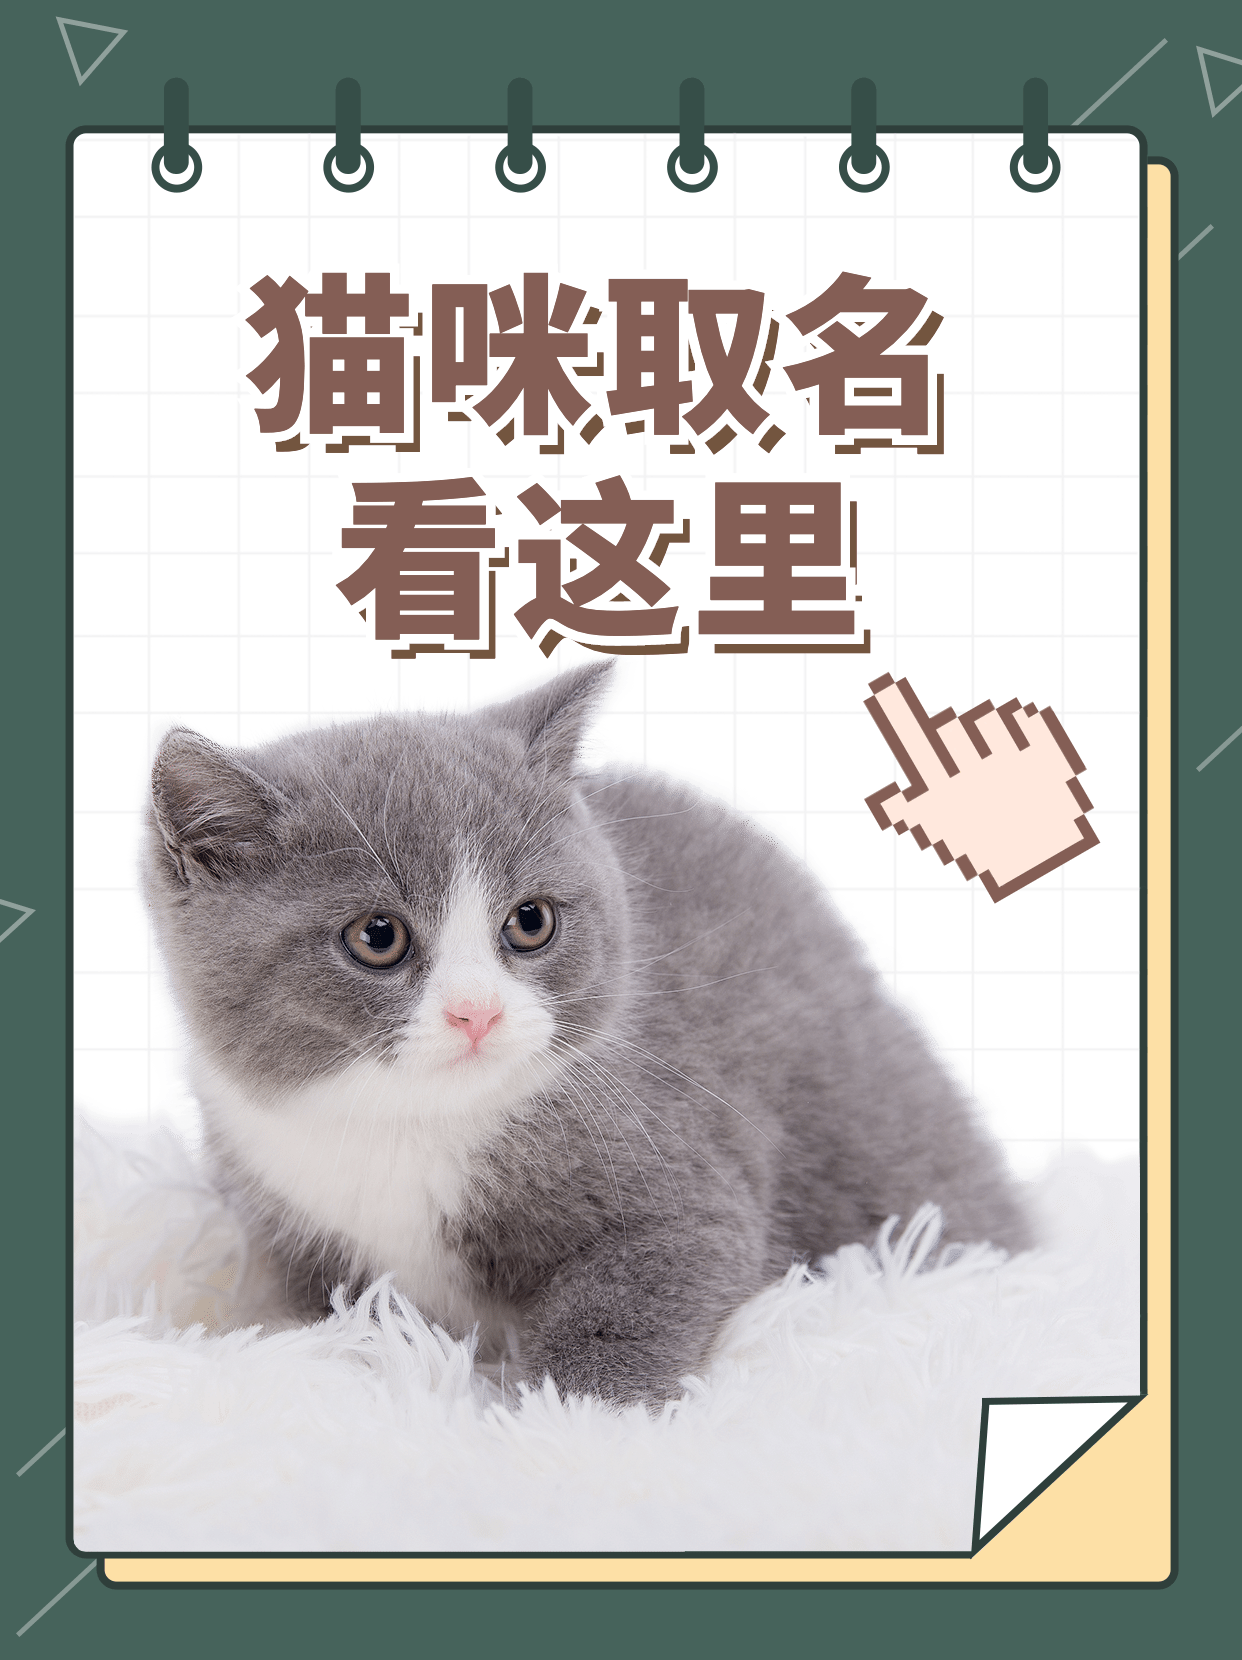 创意手写猫咖字体设计素材下载可商用